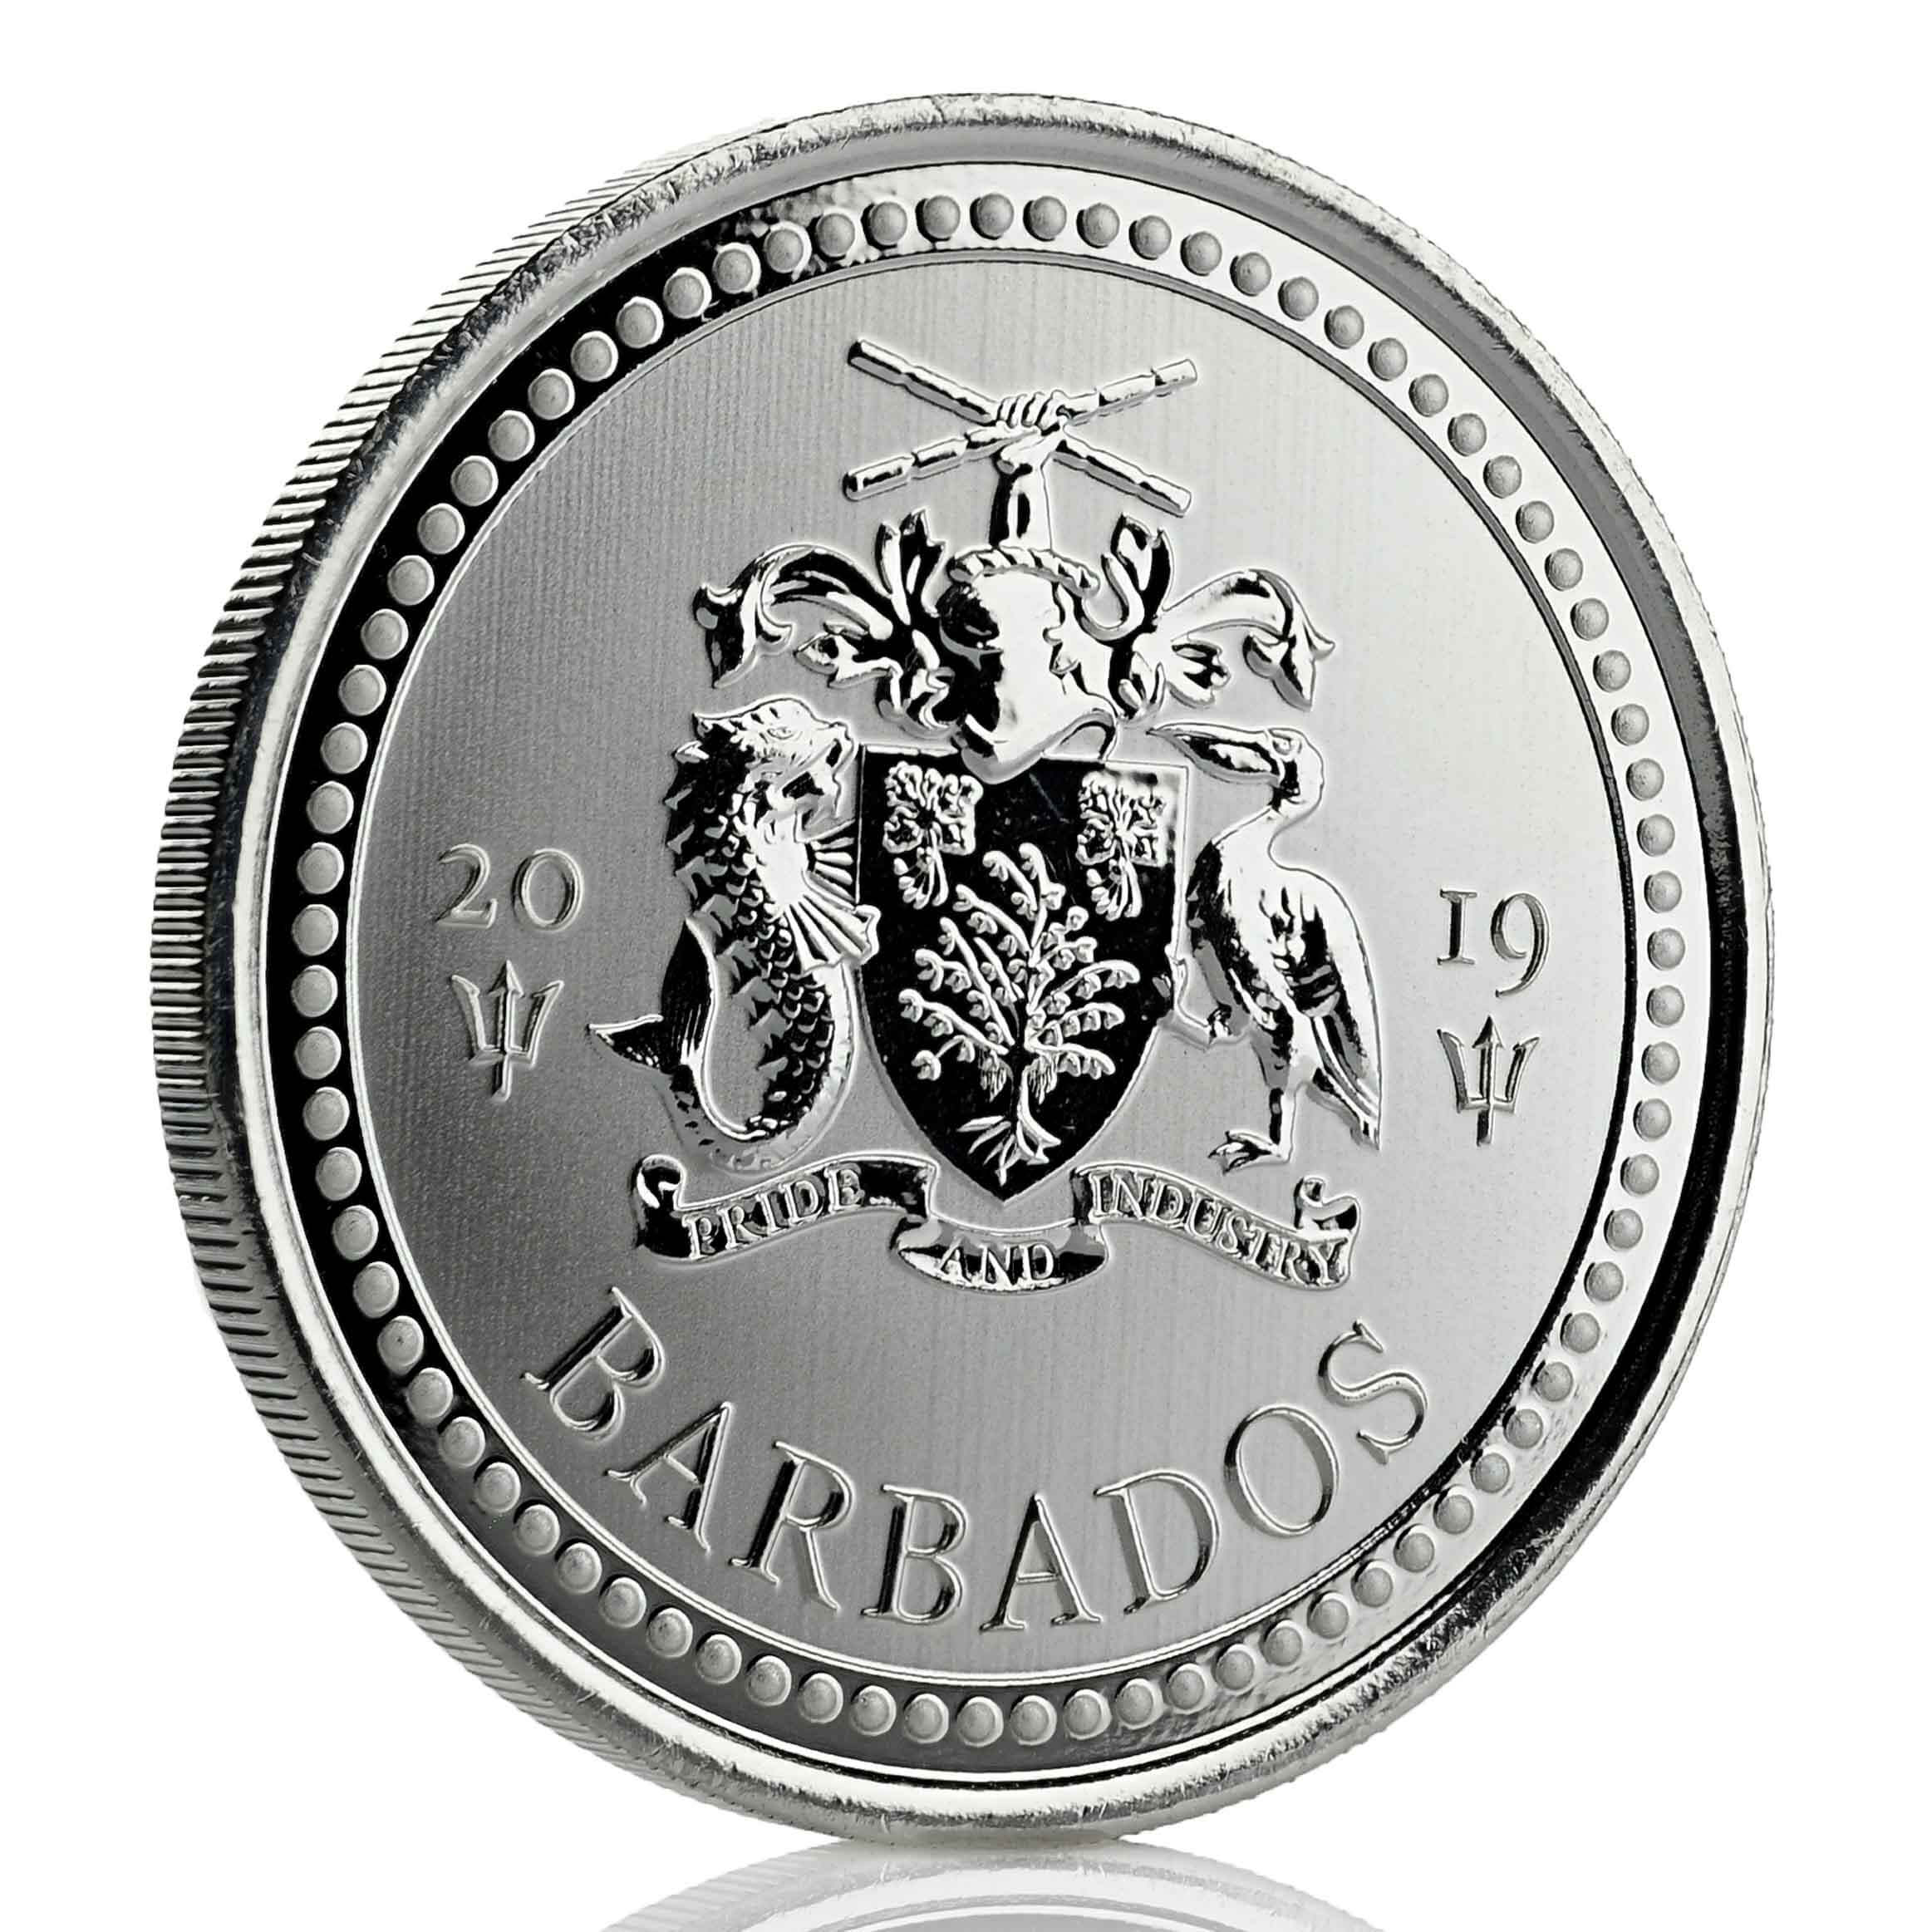 2019 Barbados Trident Silver - 1 oz Silver Coin